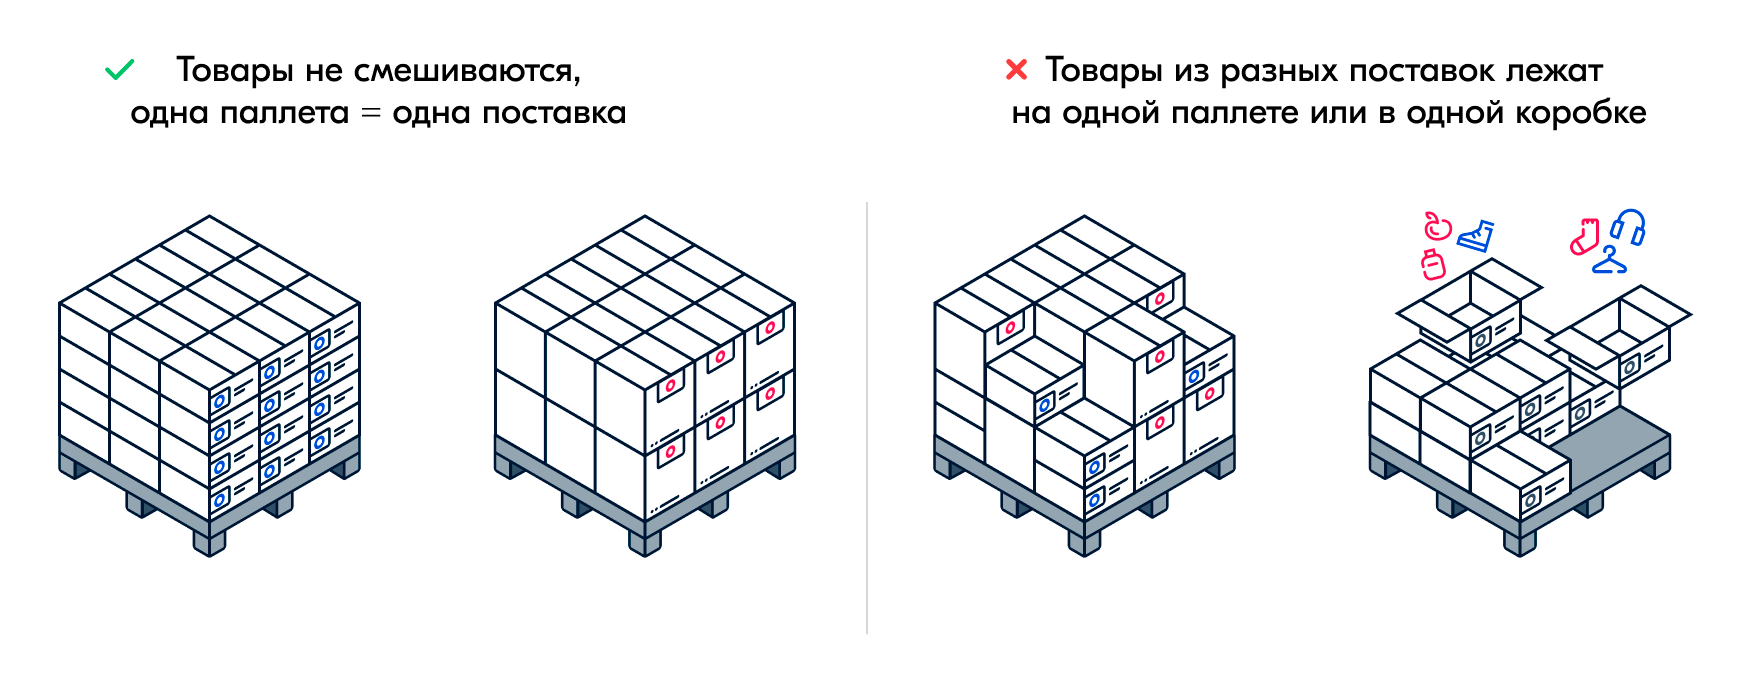 Вот так Ozon требует упаковывать товар перед поставкой. Источник: seller⁠-⁠edu.ozon.ru